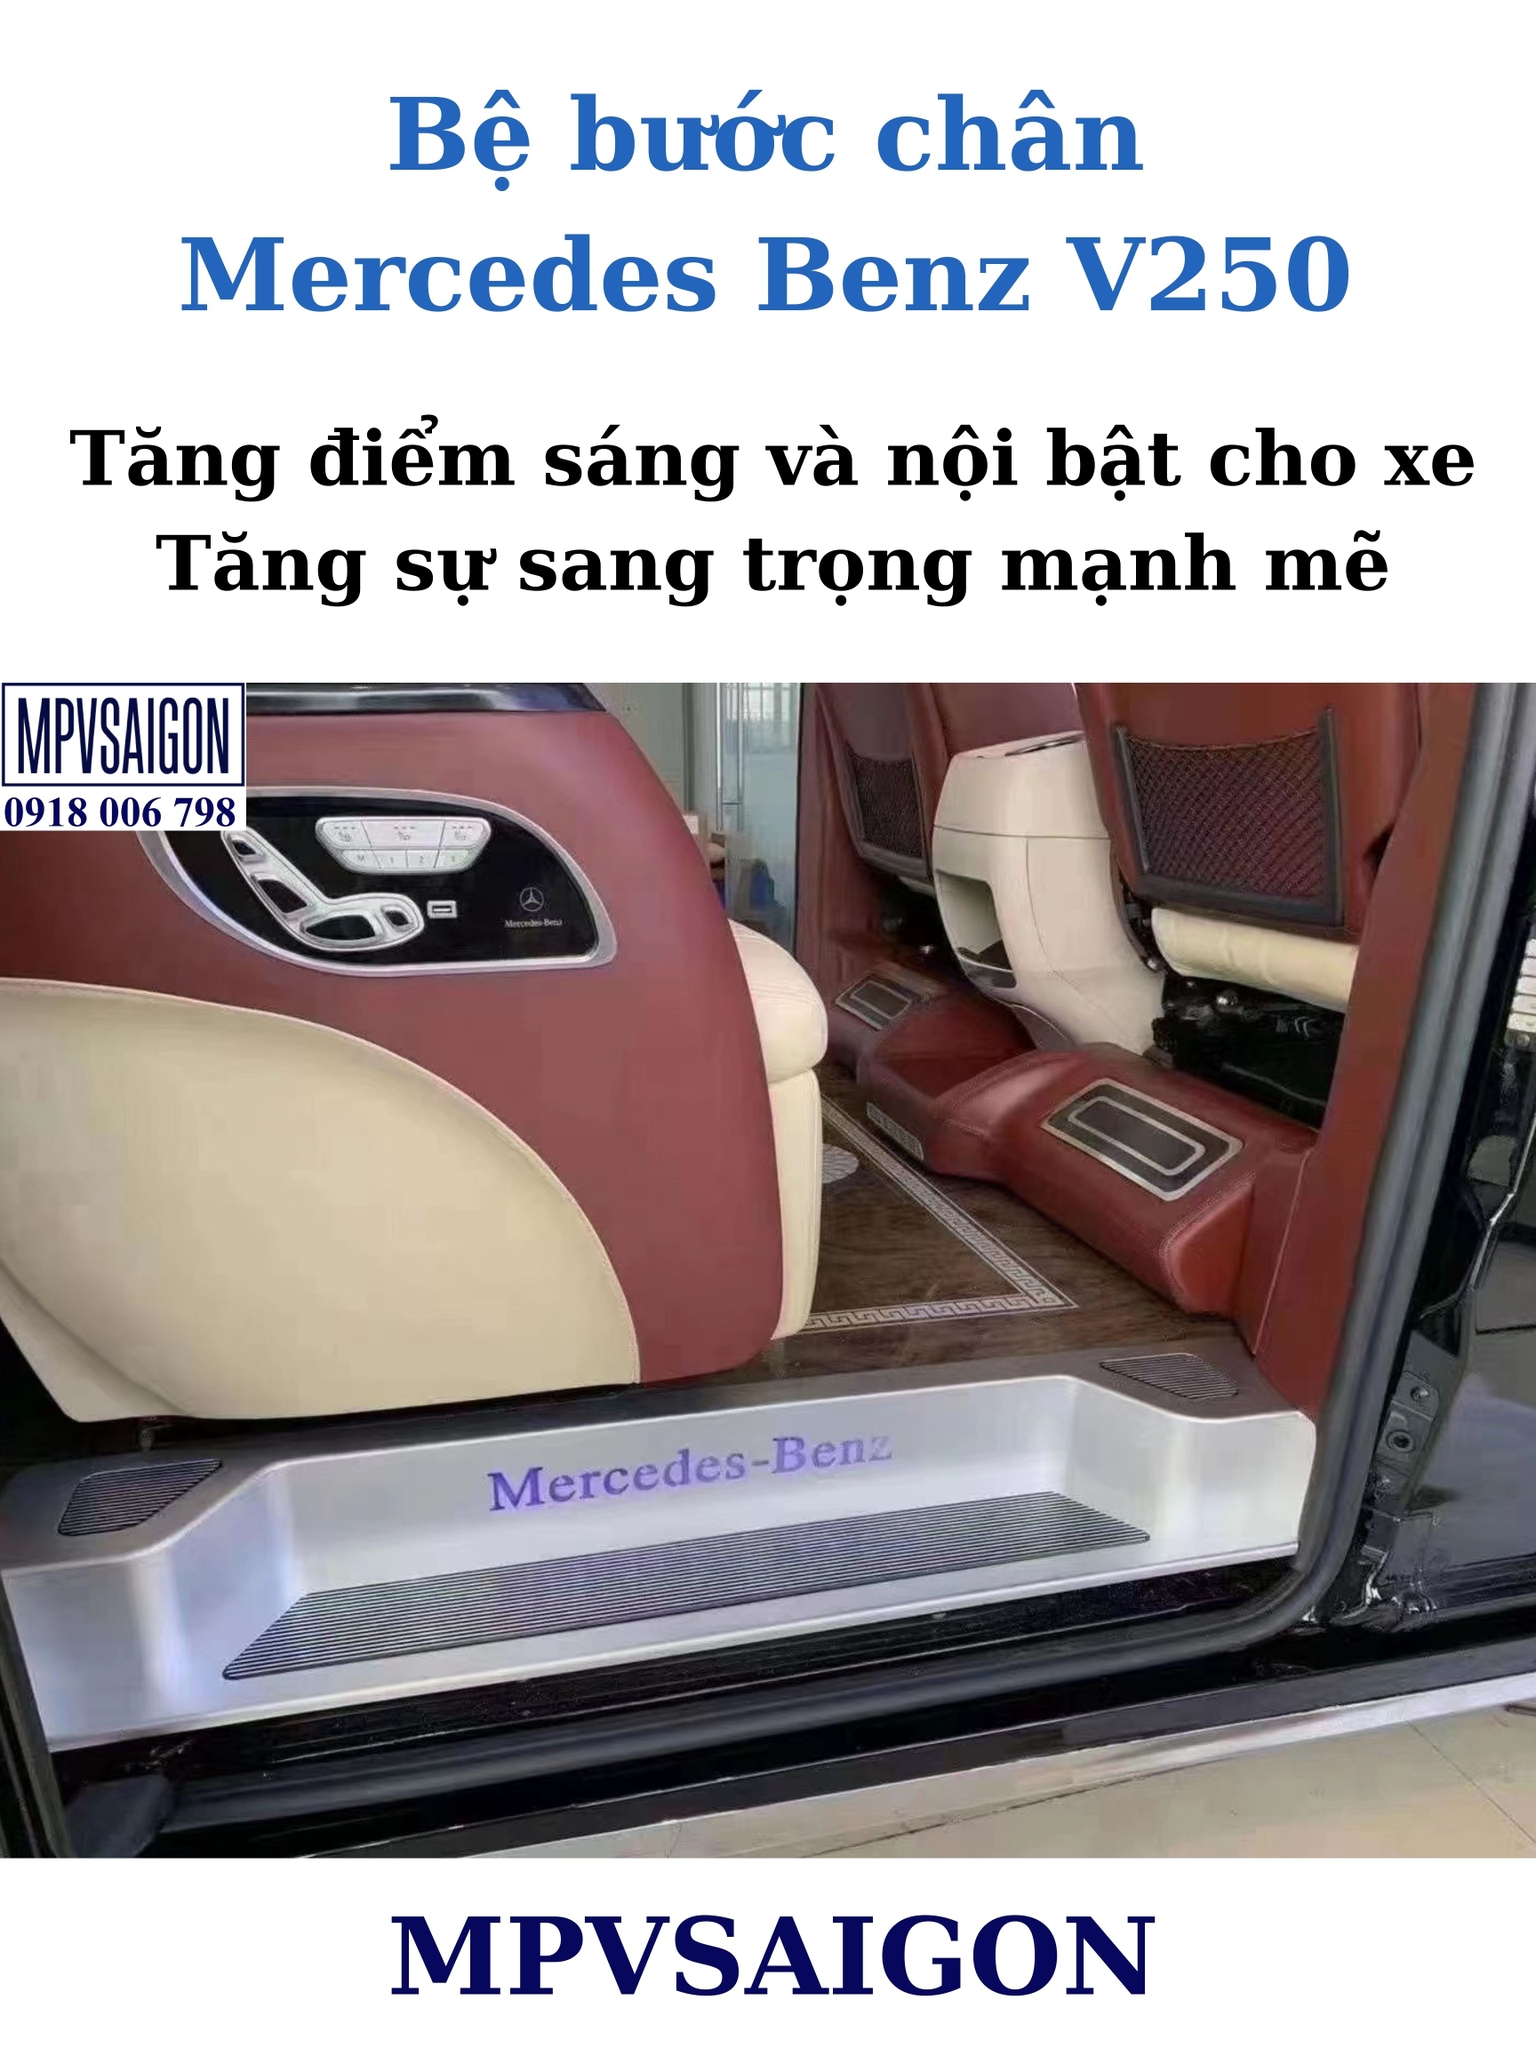  Bệ bước chân dành riêng cho Mercedes Benz V250